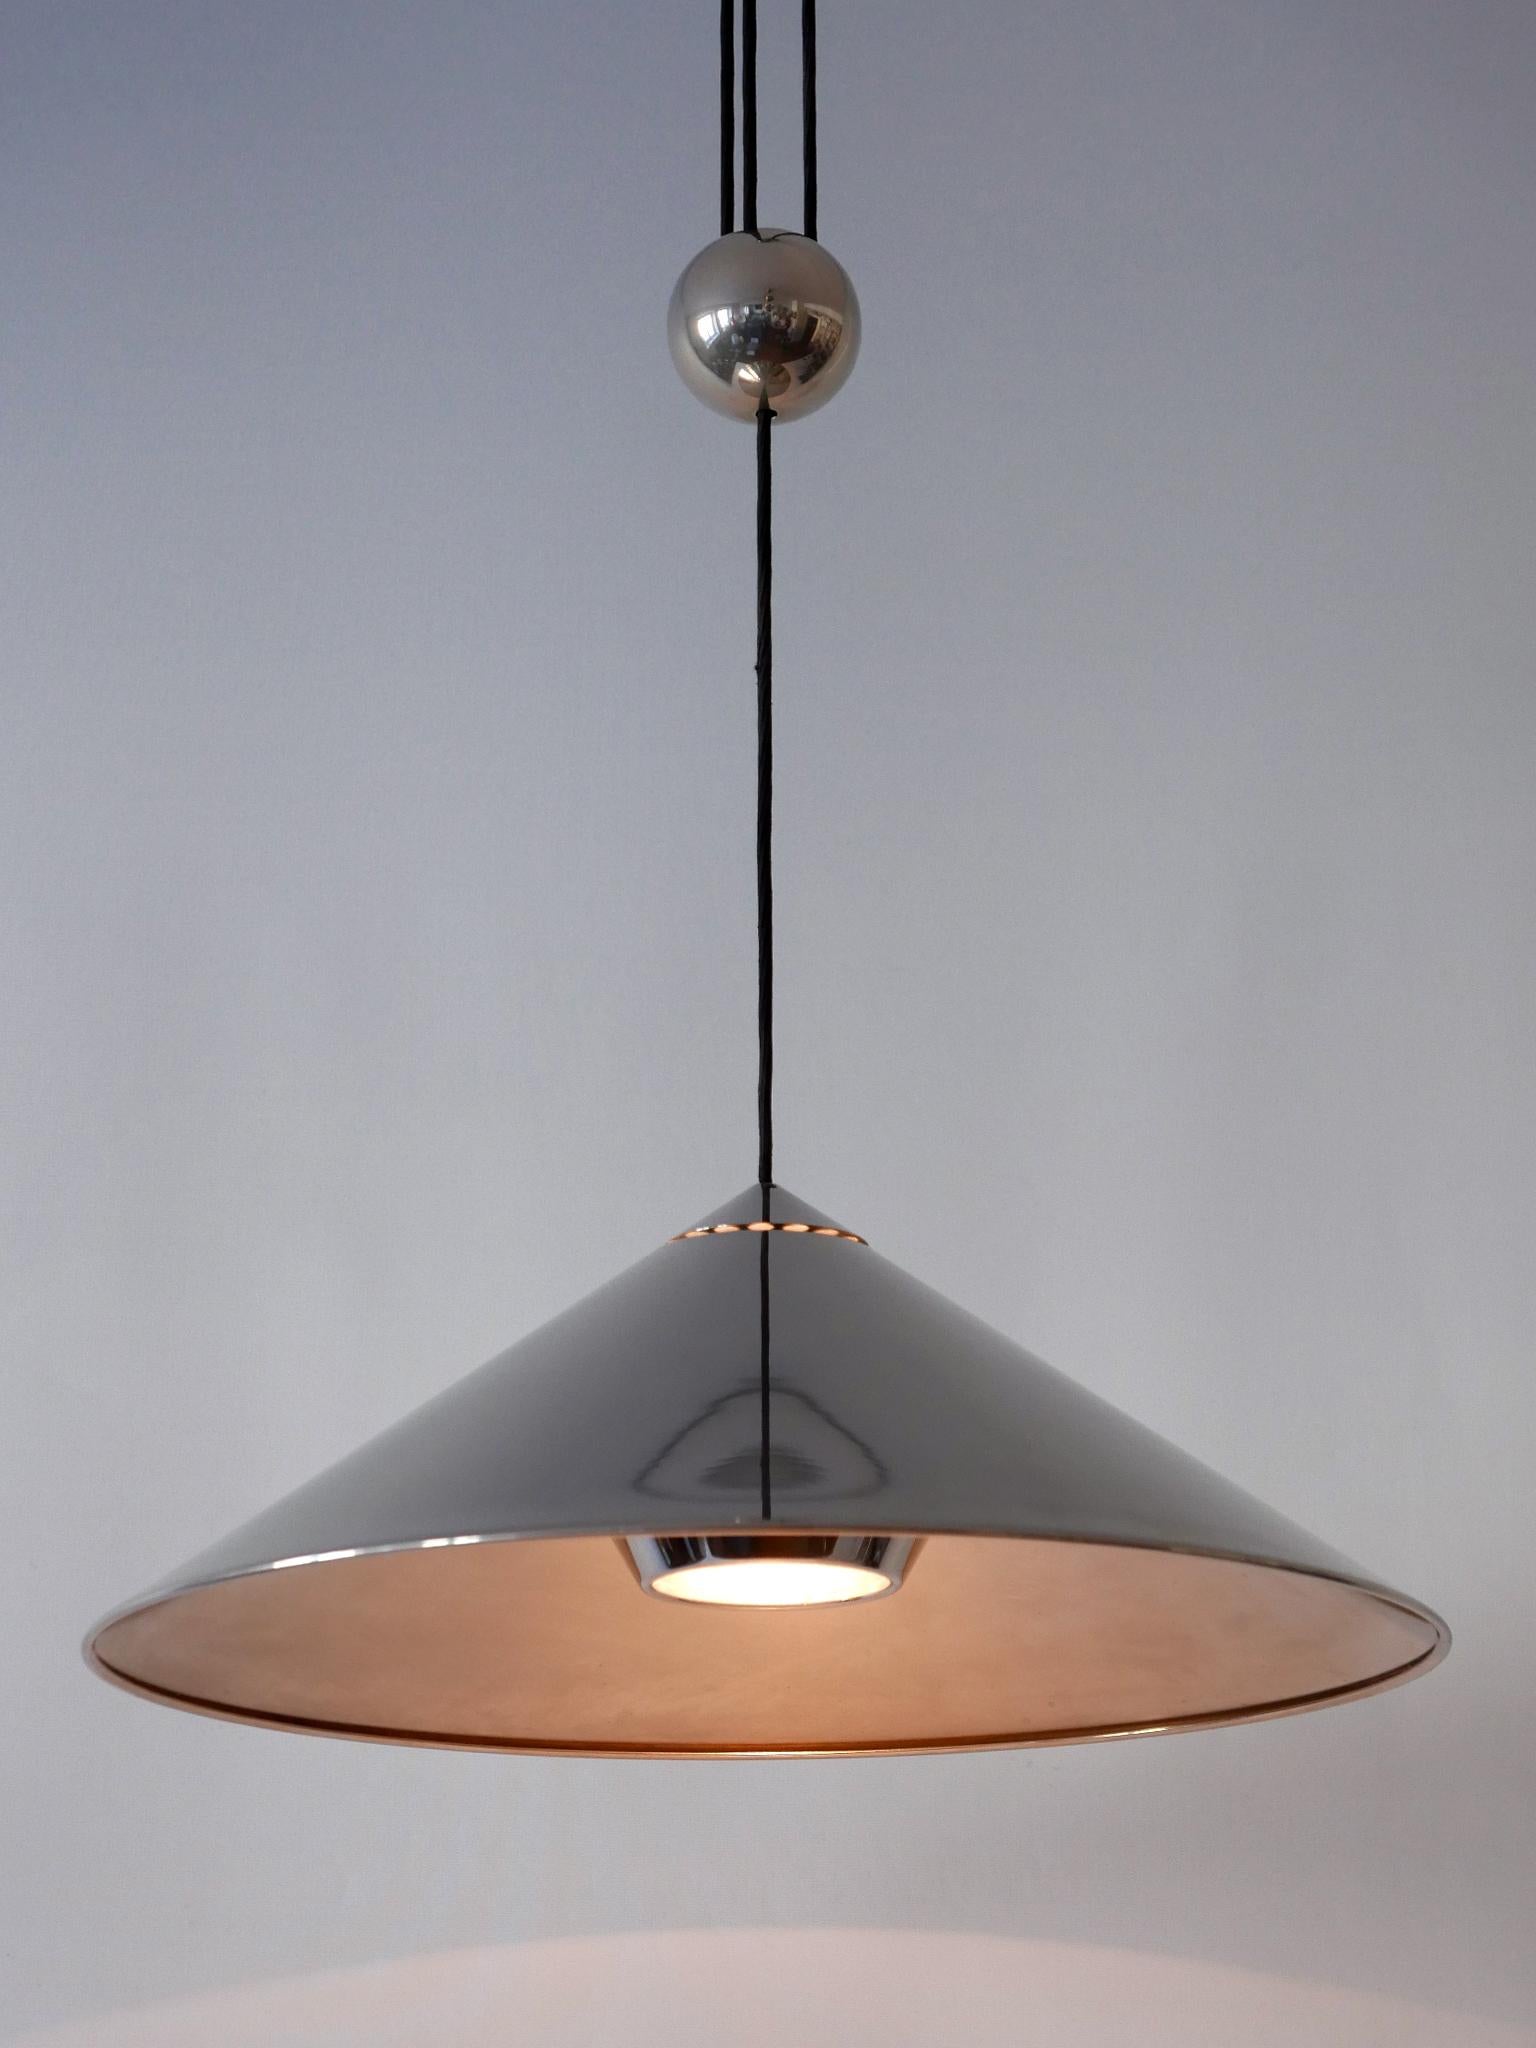 Elegante lampe suspendue à contrepoids ajustable 'Keos' de style moderne du milieu du siècle dernier. Conçu et fabriqué par Florian Schulz, Allemagne, années 1970.

Réalisée en laiton nickelé, la lampe nécessite 1 ampoule à vis E27 Edison, est